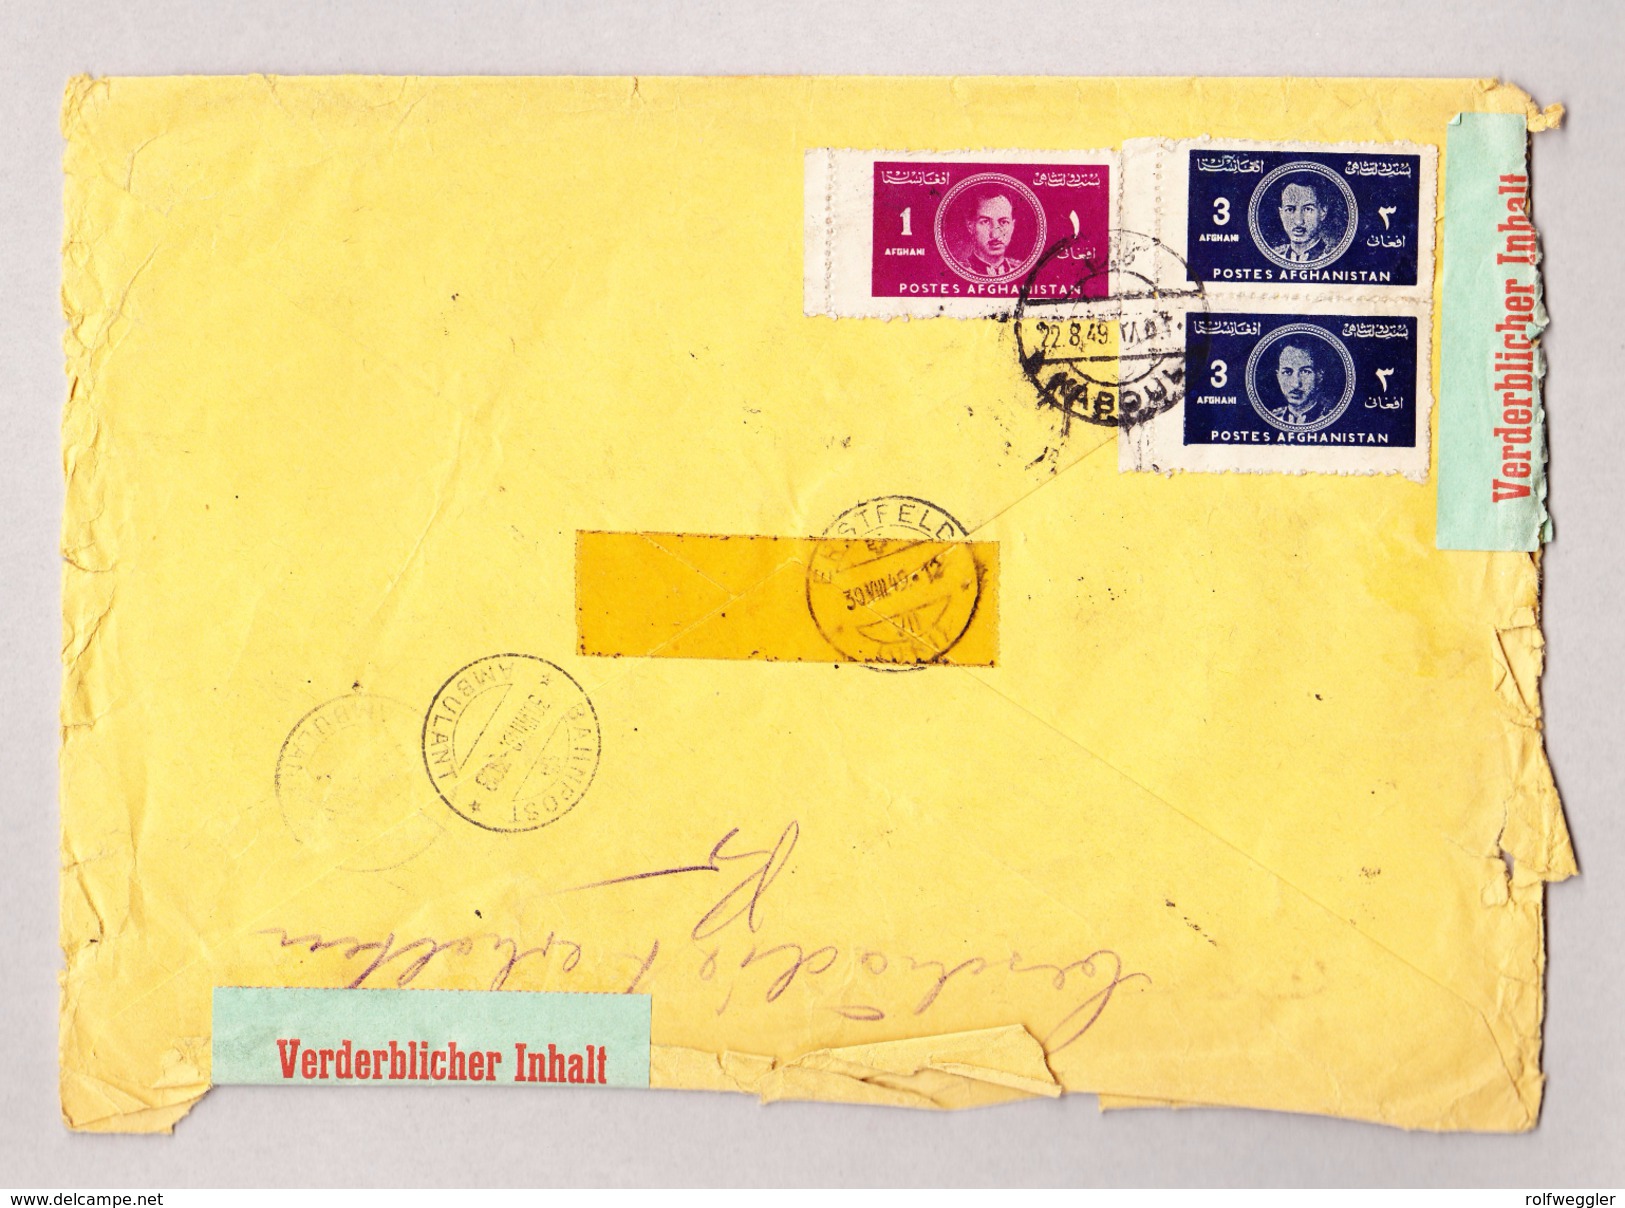 Afghanistan Firmen Luftpost R-Brief 22.8.1949 Kaboul Nach Erstfeld Mit Veraschlussetiketten "Verderblicher Inhalt" - Afghanistan